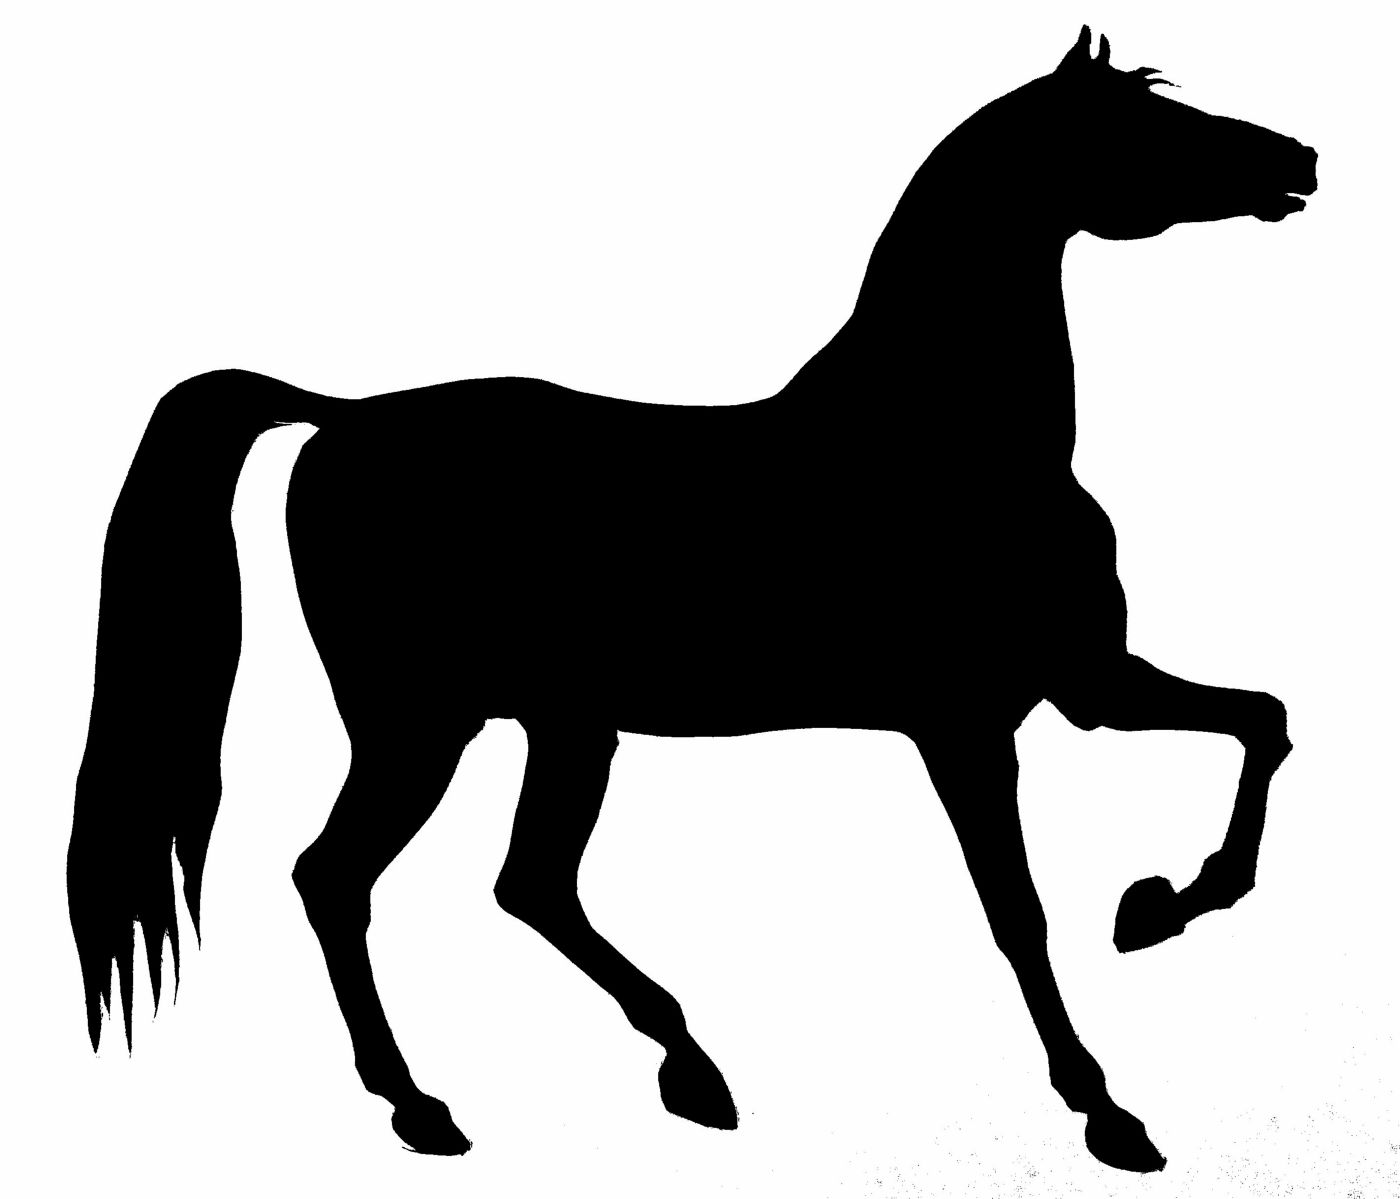 saraccino: Horse silhouette / stencil